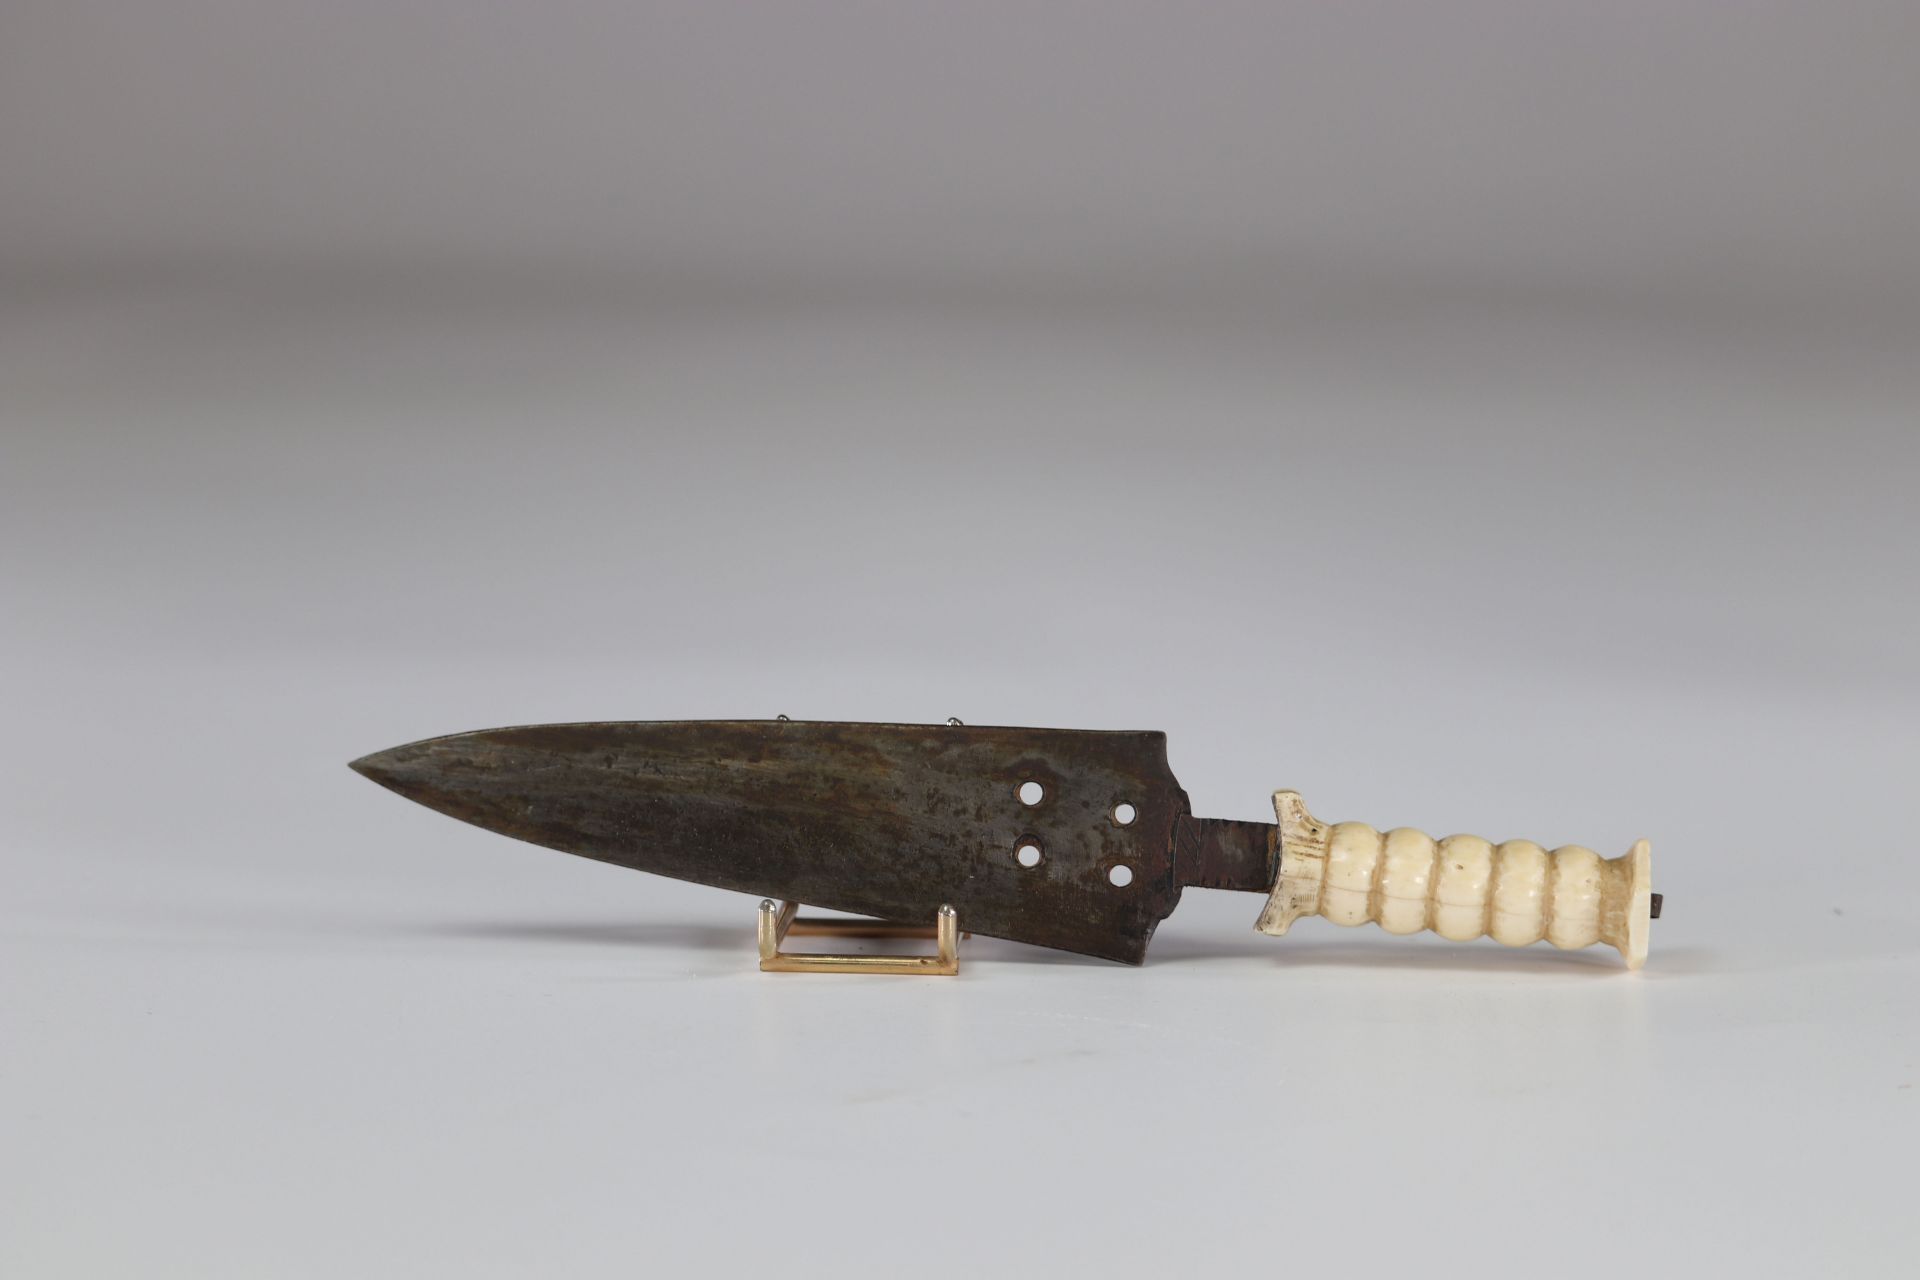 Mangbetu knife in its sheath - Image 4 of 4